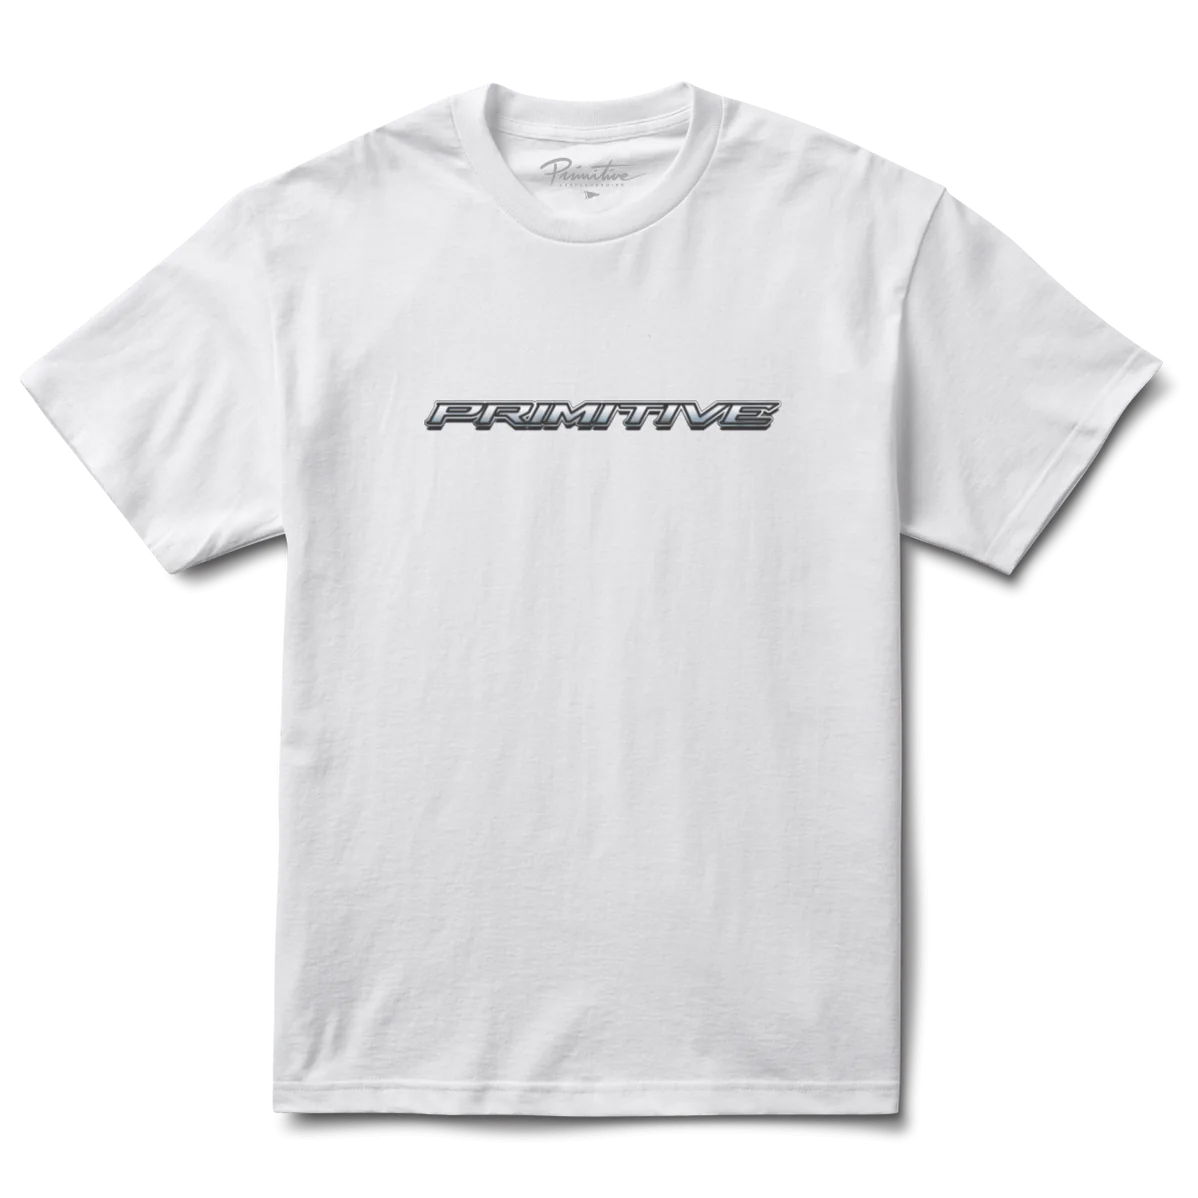 Primitive Rodriguez Projects Car T-Shirt White